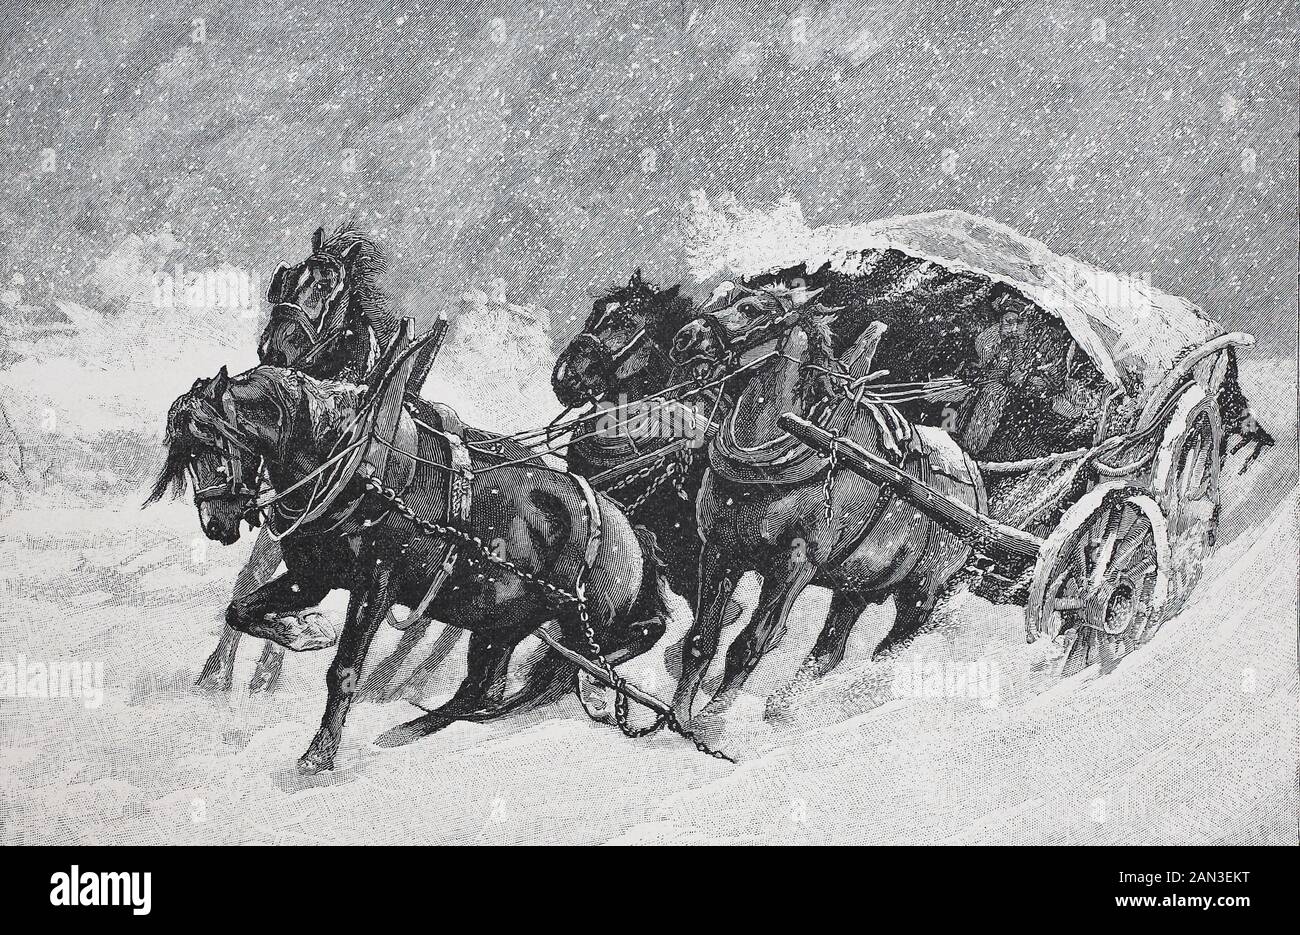 four-horse horse-drawn carriage got stuck in the snow,   /  Vierspännige Kutsche blieb im Schnee stecken, Historisch, digital improved reproduction of an original from the 19th century / digitale Reproduktion einer Originalvorlage aus dem 19. Jahrhundert Stock Photo